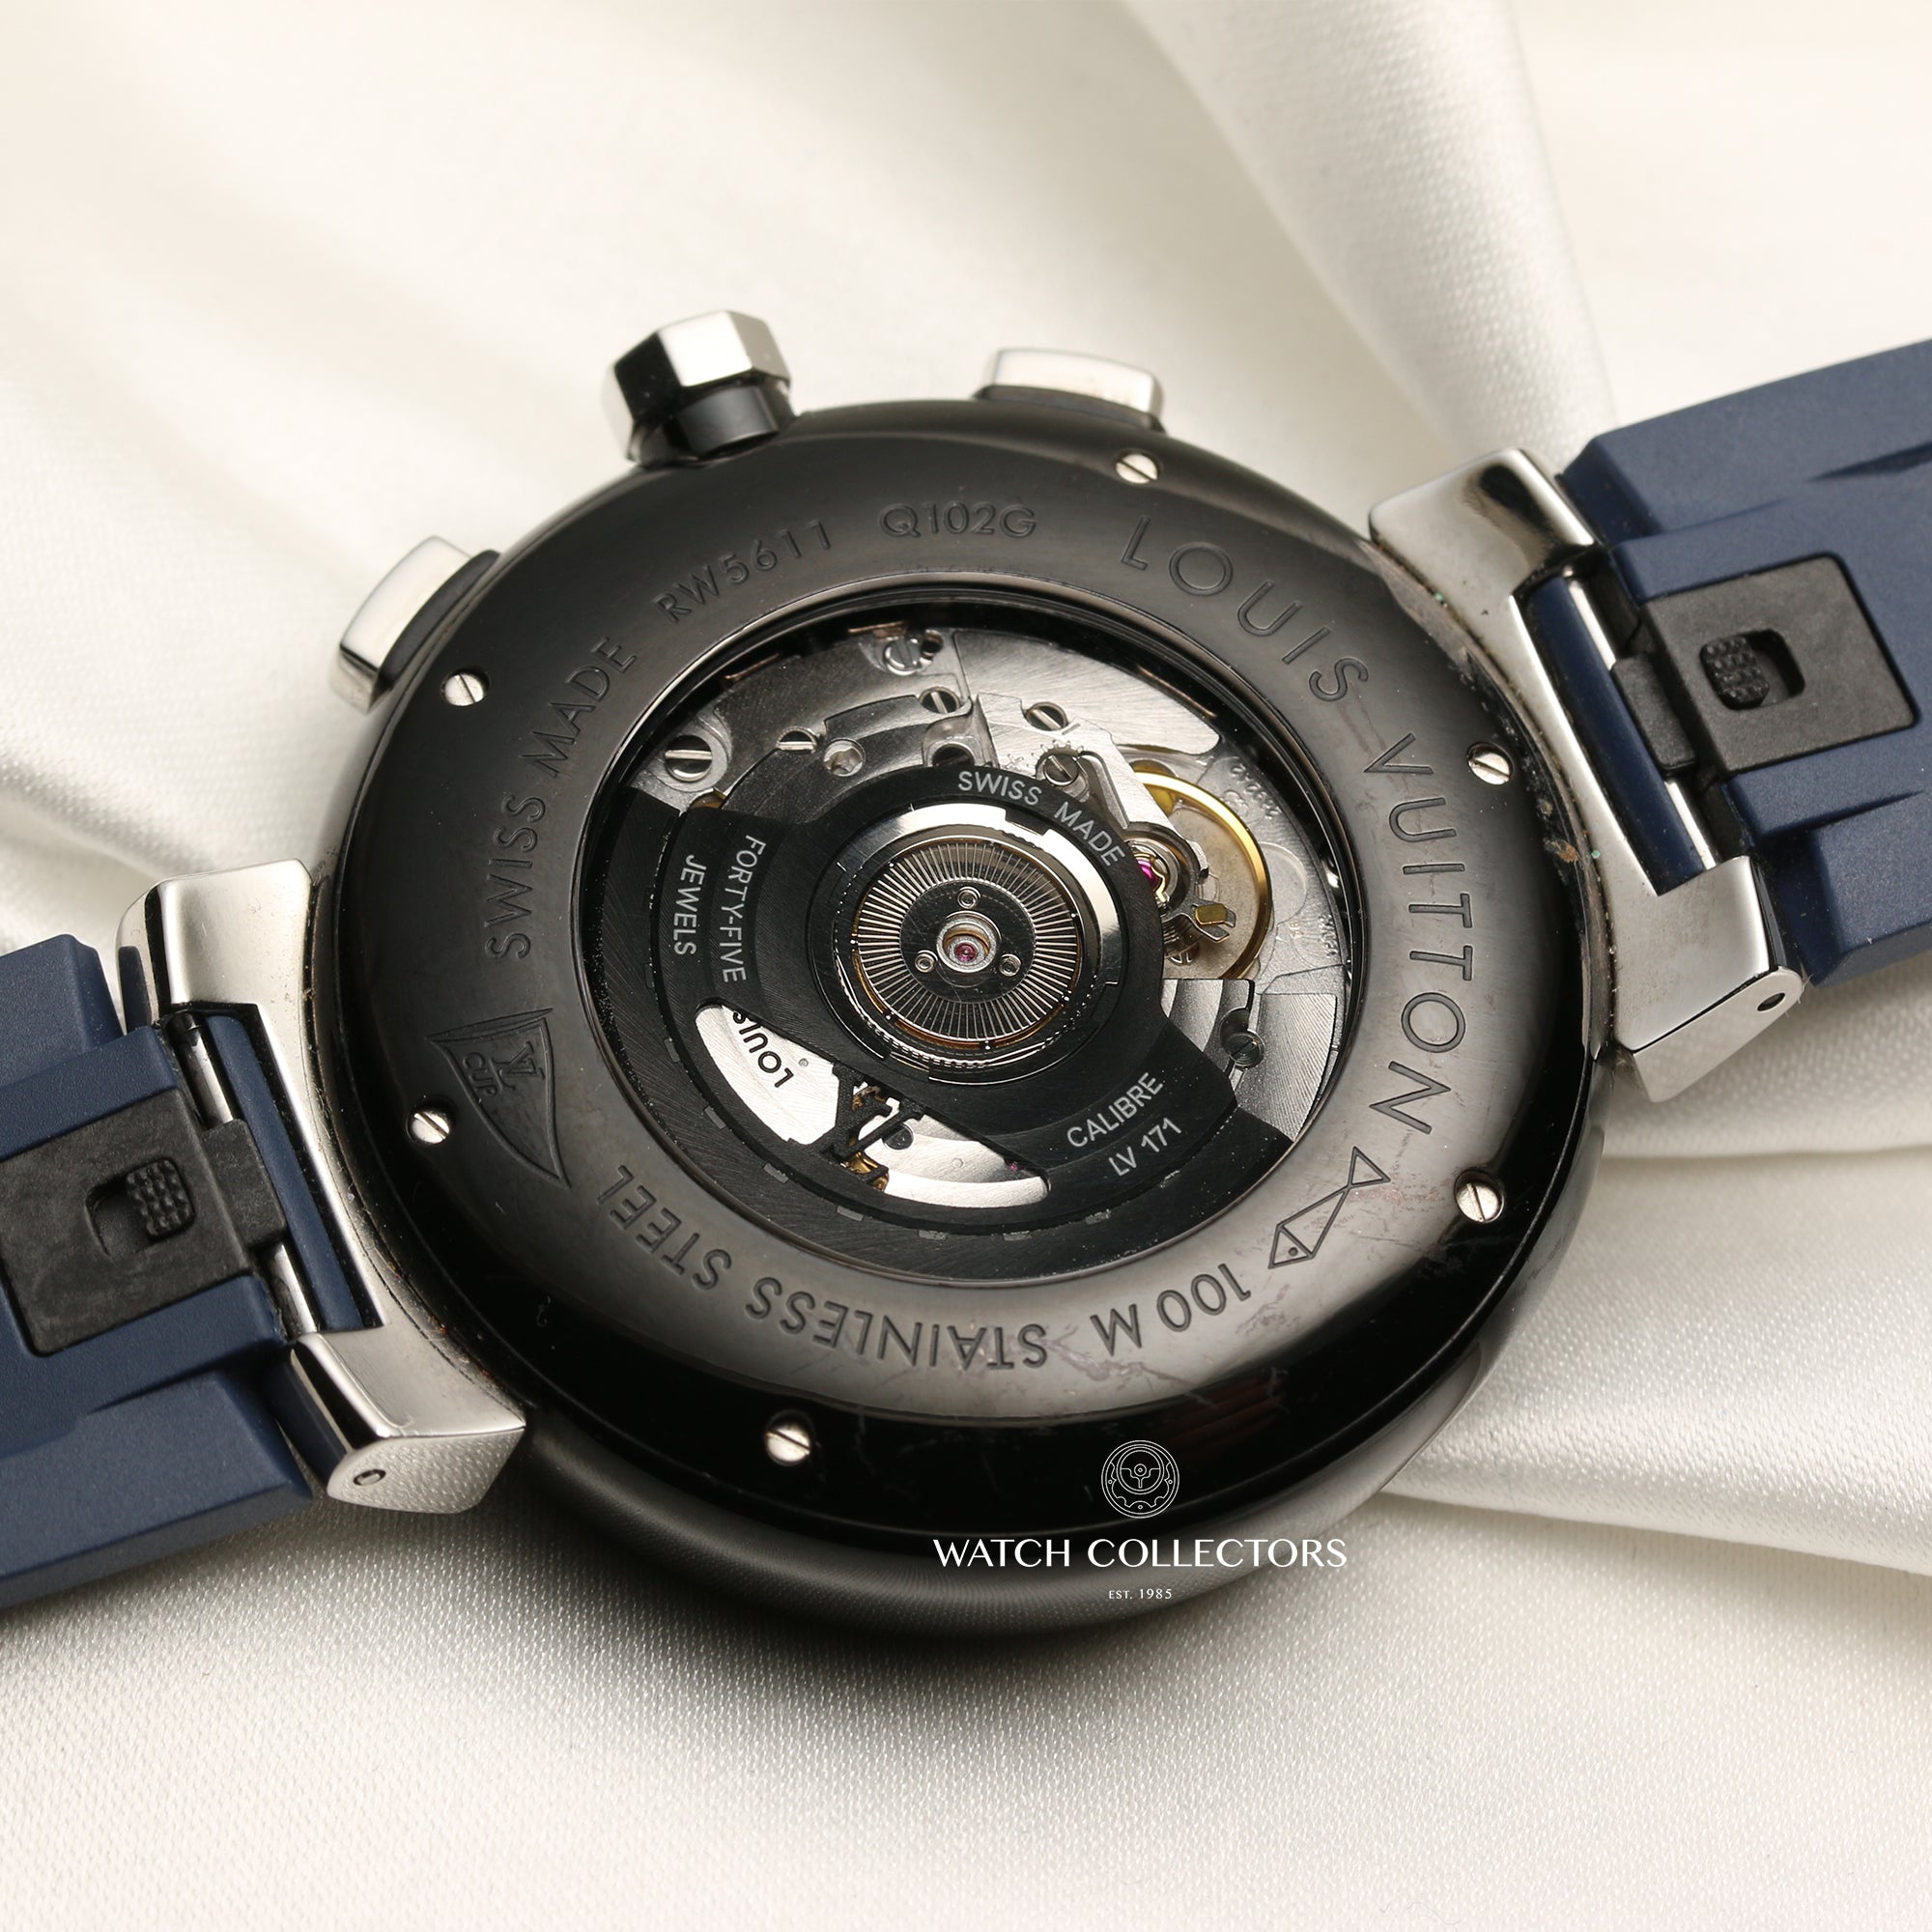 Louis Vuitton Tambour Lovely Cup Chronograph Quartz Watch